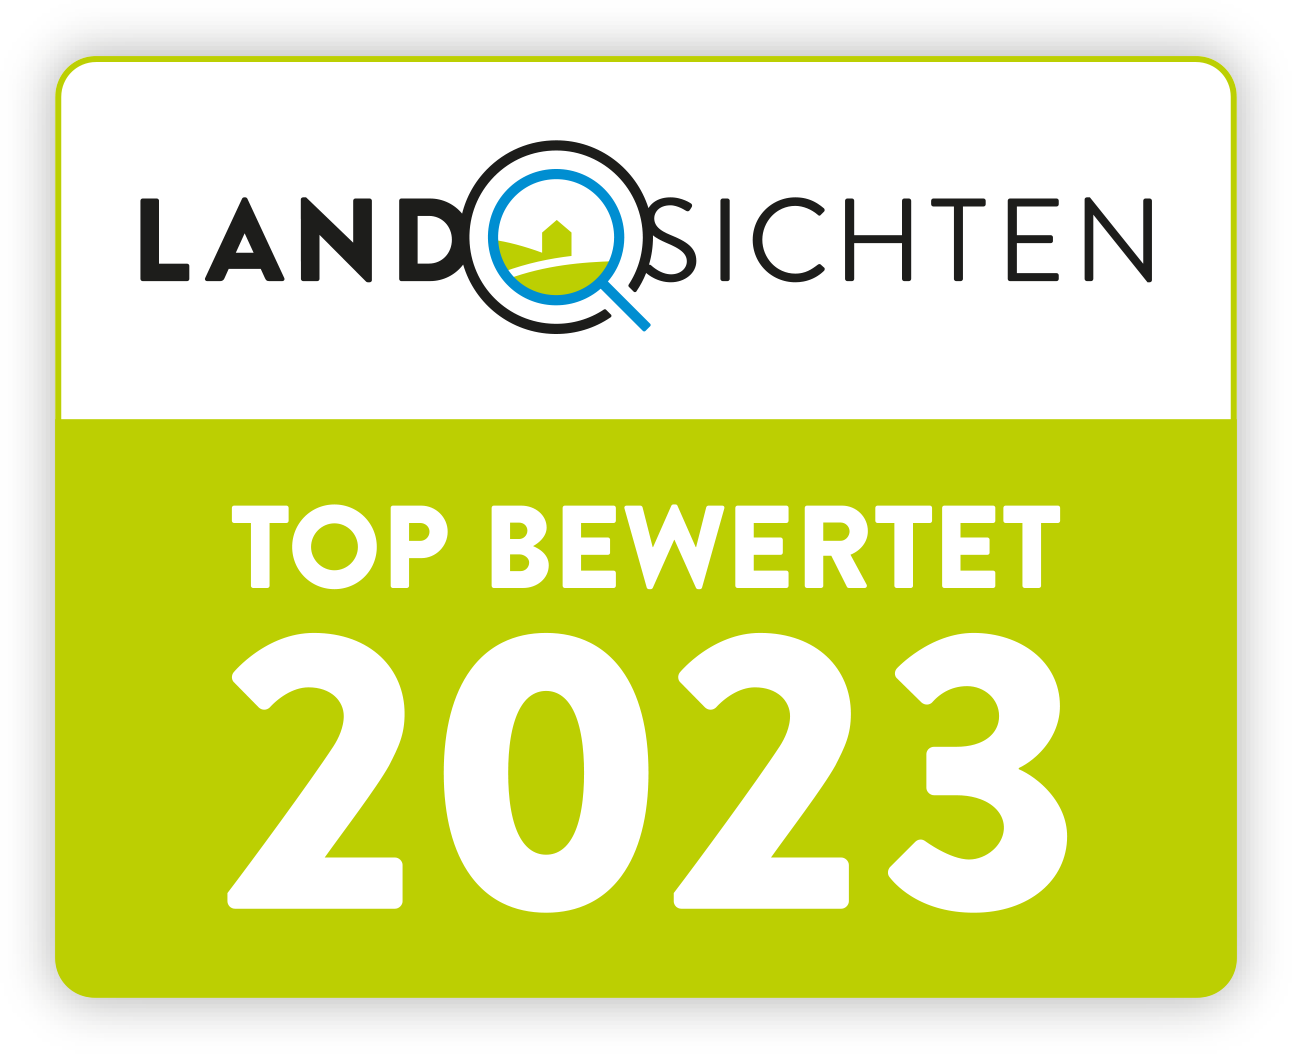 Landsichten - Top bewertet 2023